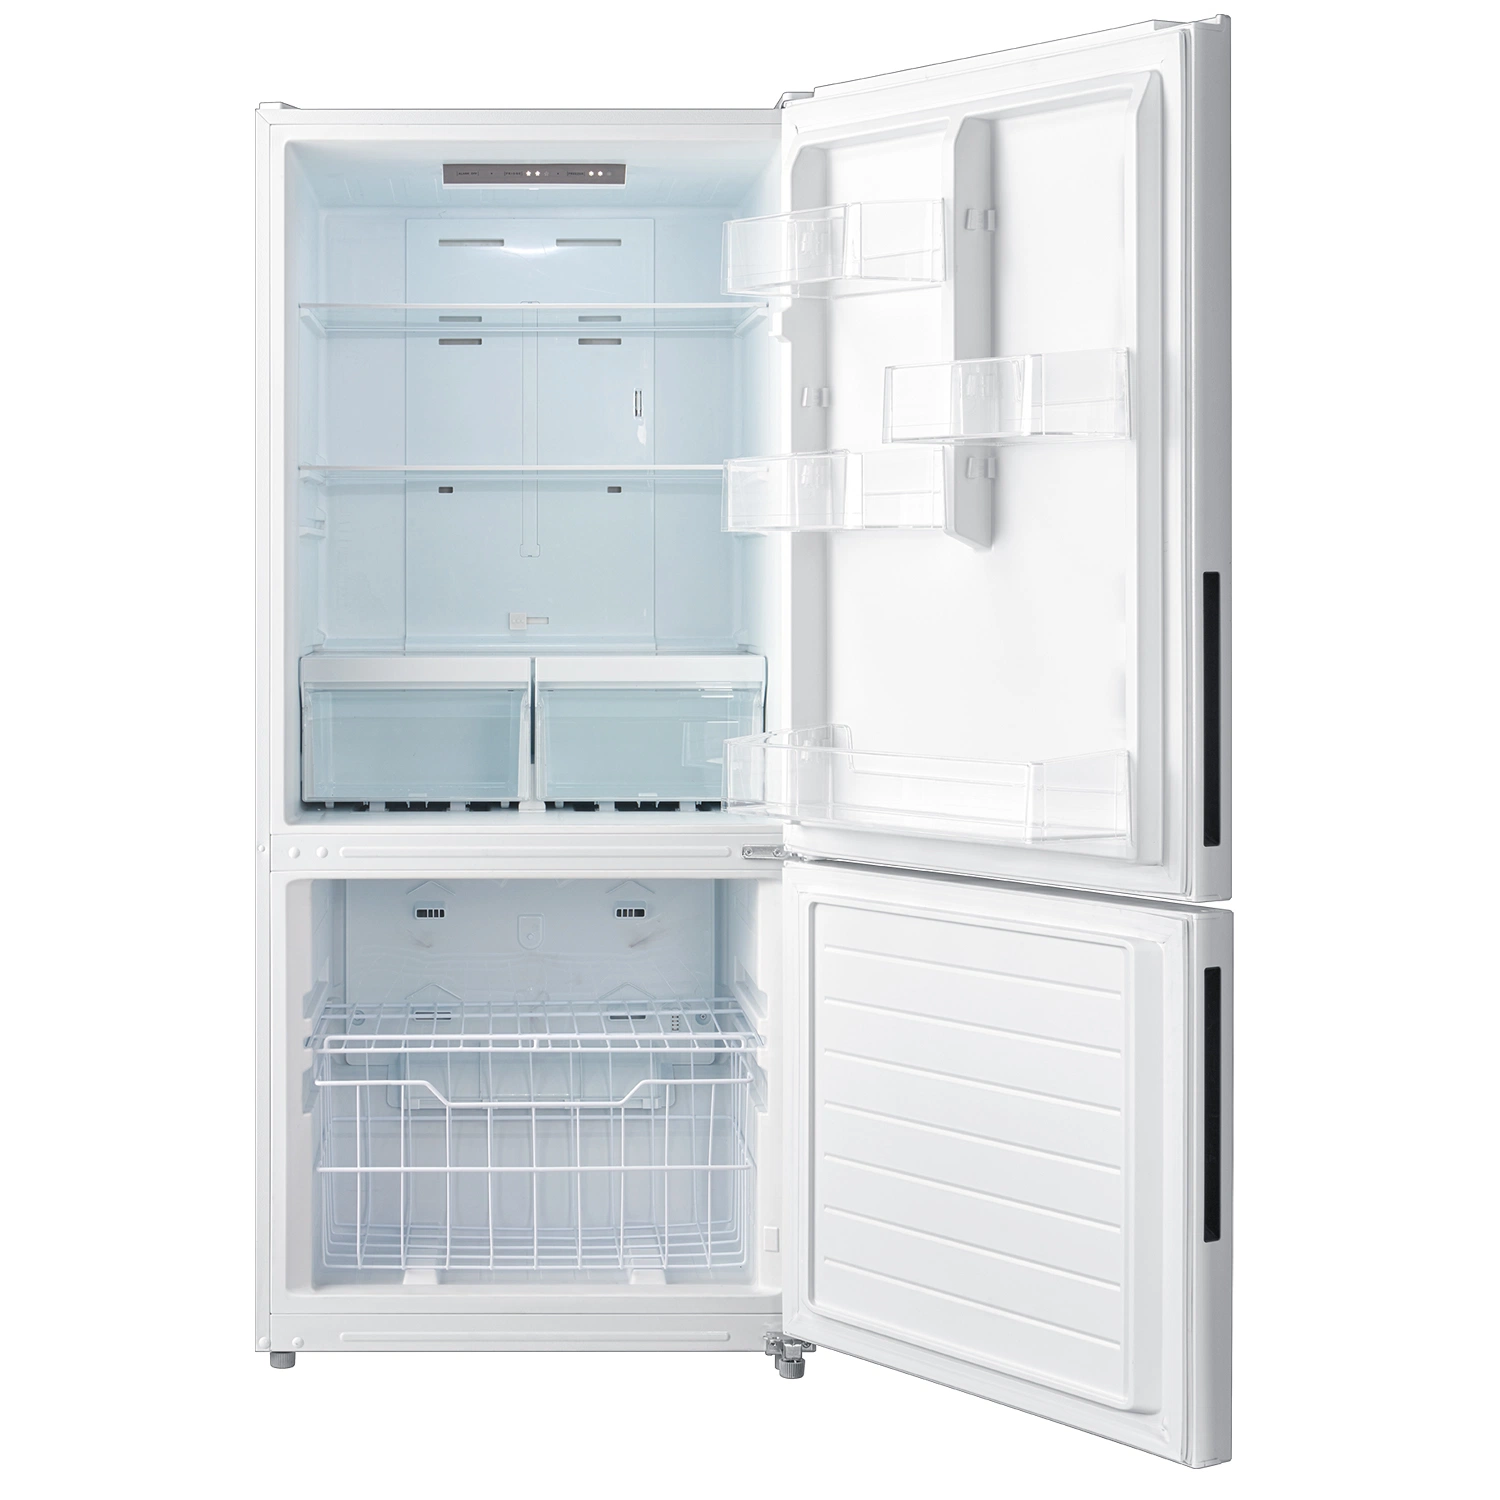 Moban Home Refrigerator & Freezer